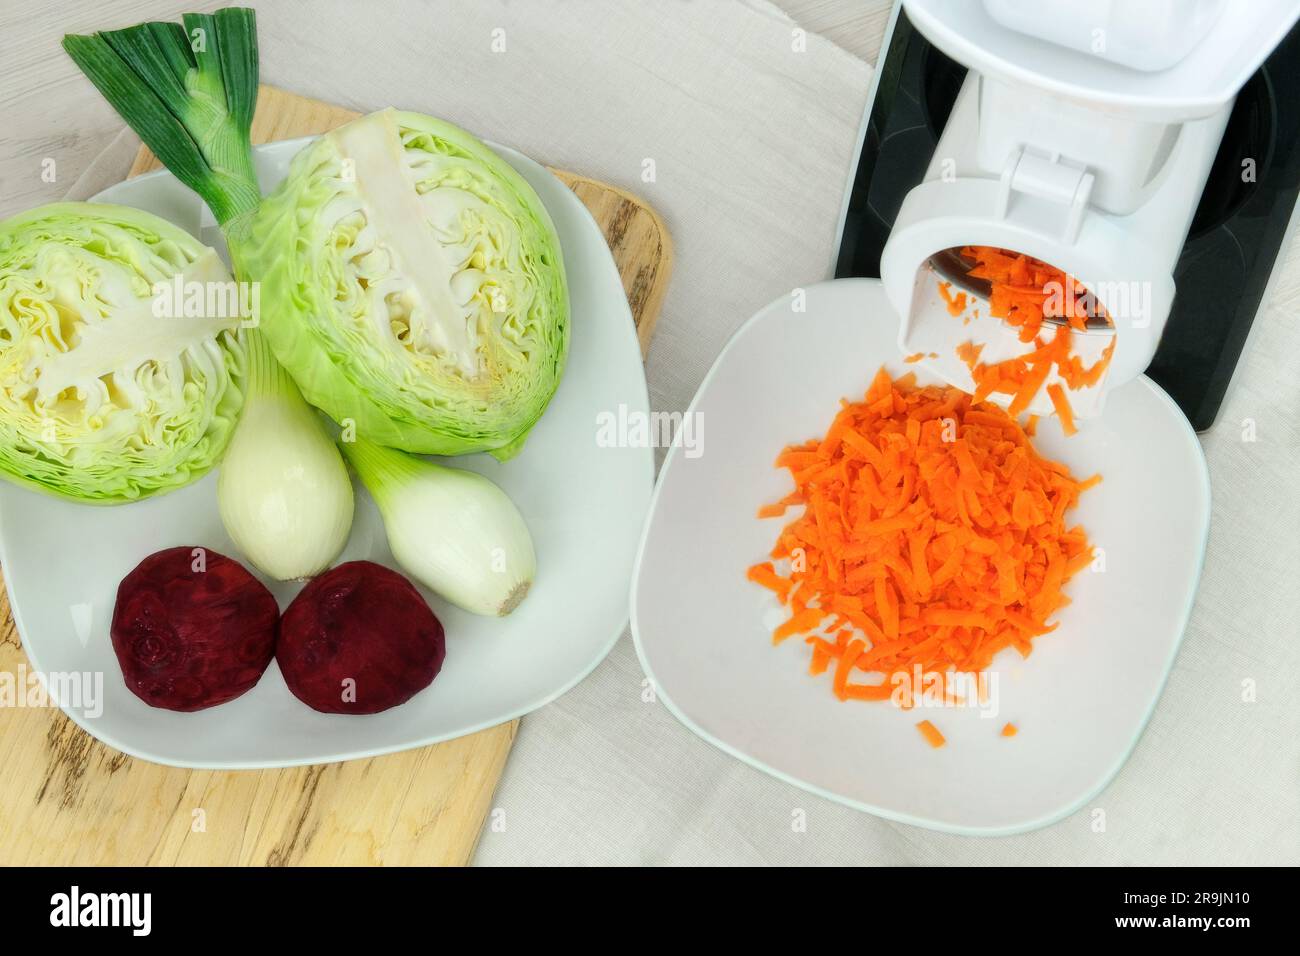 https://c8.alamy.com/compes/2r9jn10/zanahorias-en-un-cortador-de-verduras-en-la-mesa-de-la-cocina-las-zanahorias-picadas-estan-cayendo-en-un-tazon-comida-sana-casera-2r9jn10.jpg